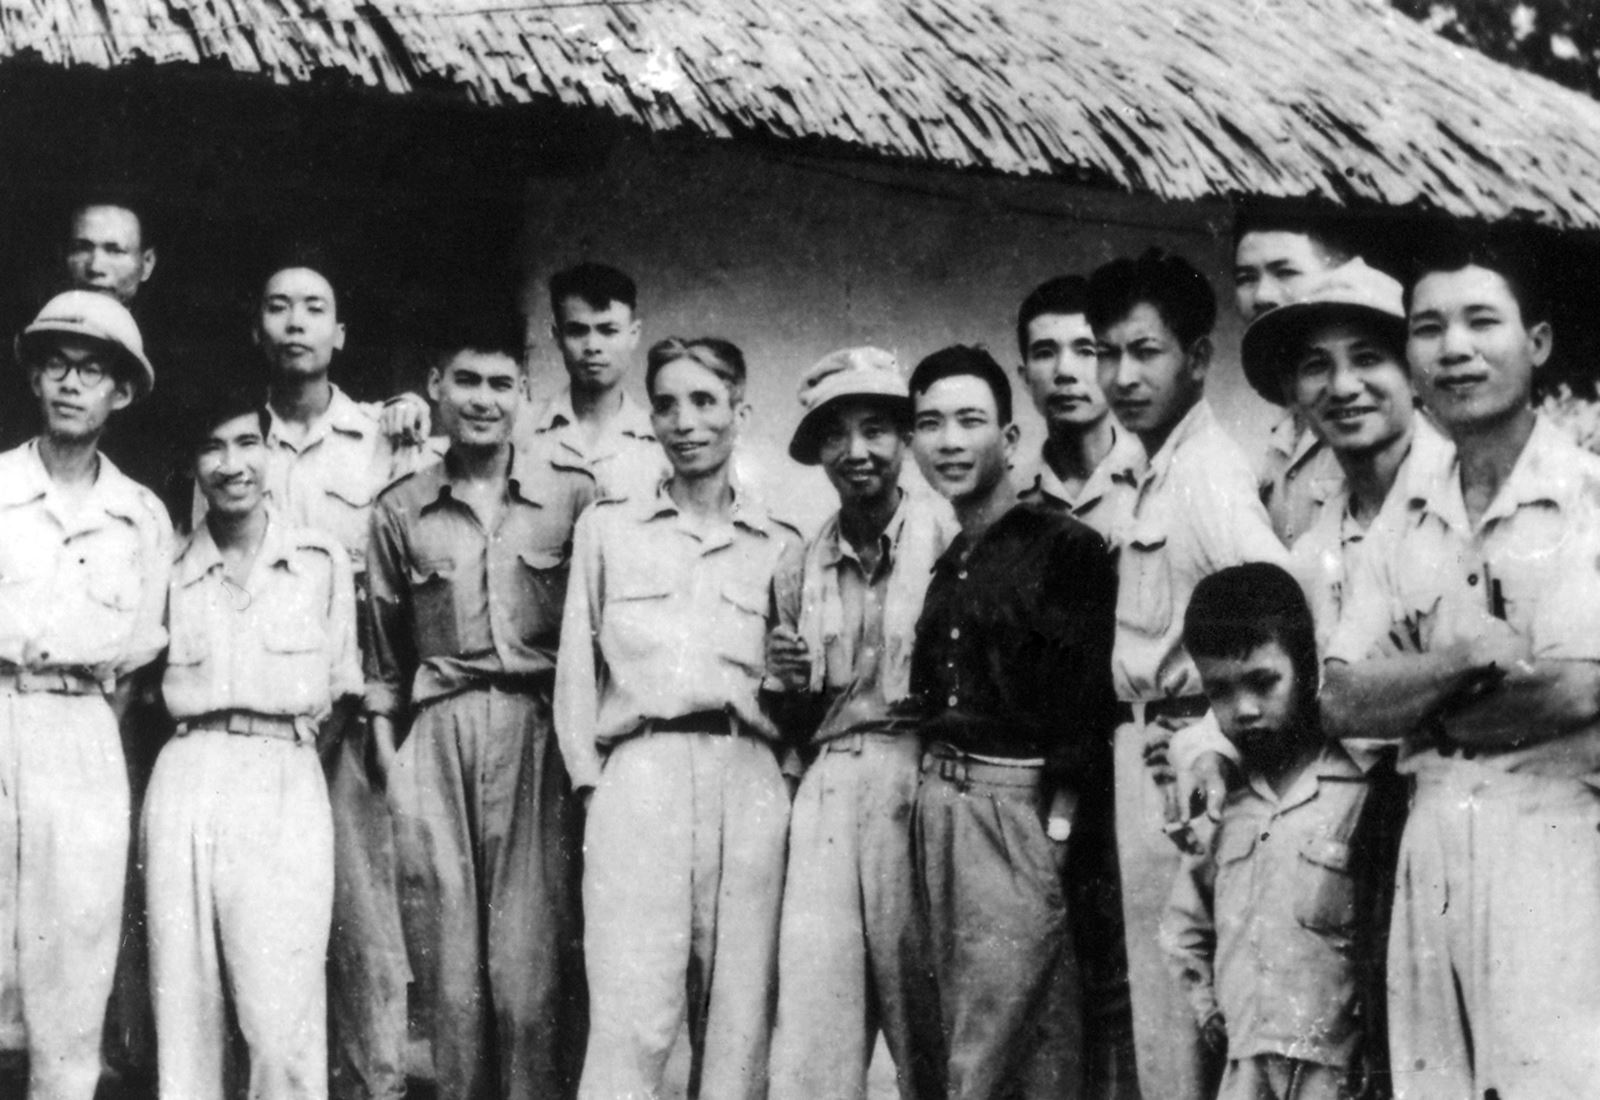 Khuynh hướng văn học mang tính sử thi trong văn học Việt Nam 1945 – 1975 - 2